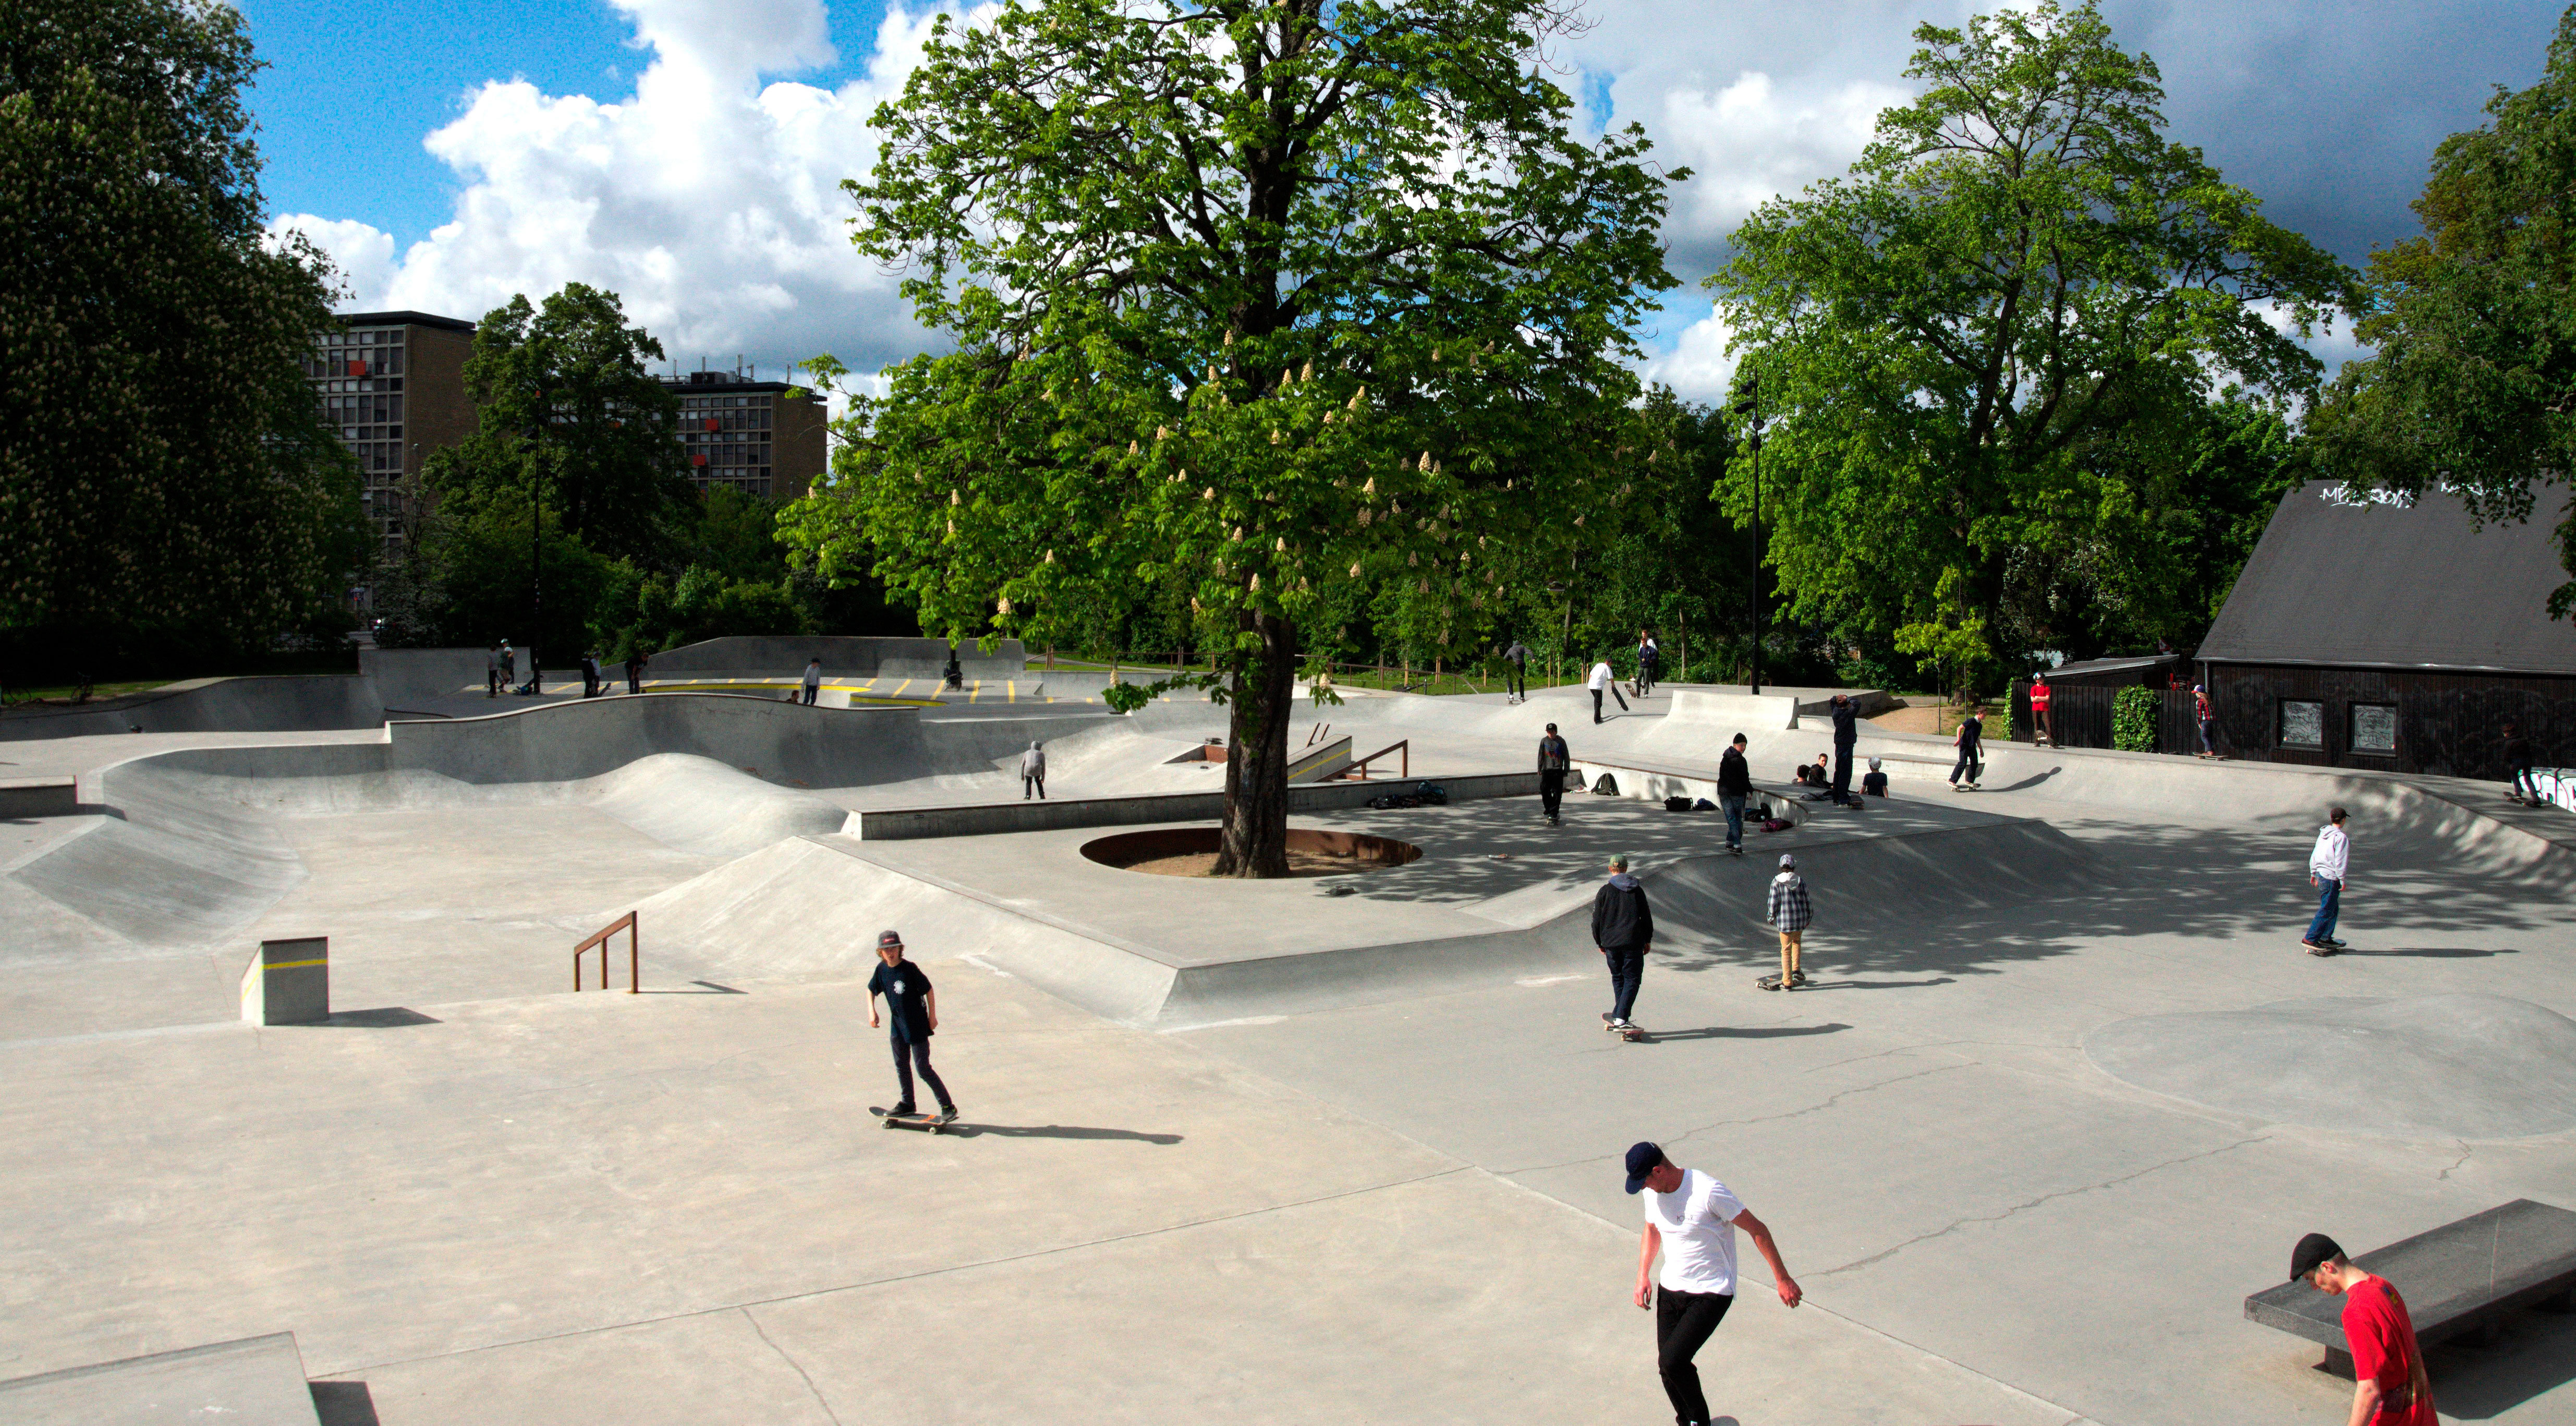 La Stazione di Milano Centrale tra i migliori Skate Park in Europa, secondo Tony Hawk